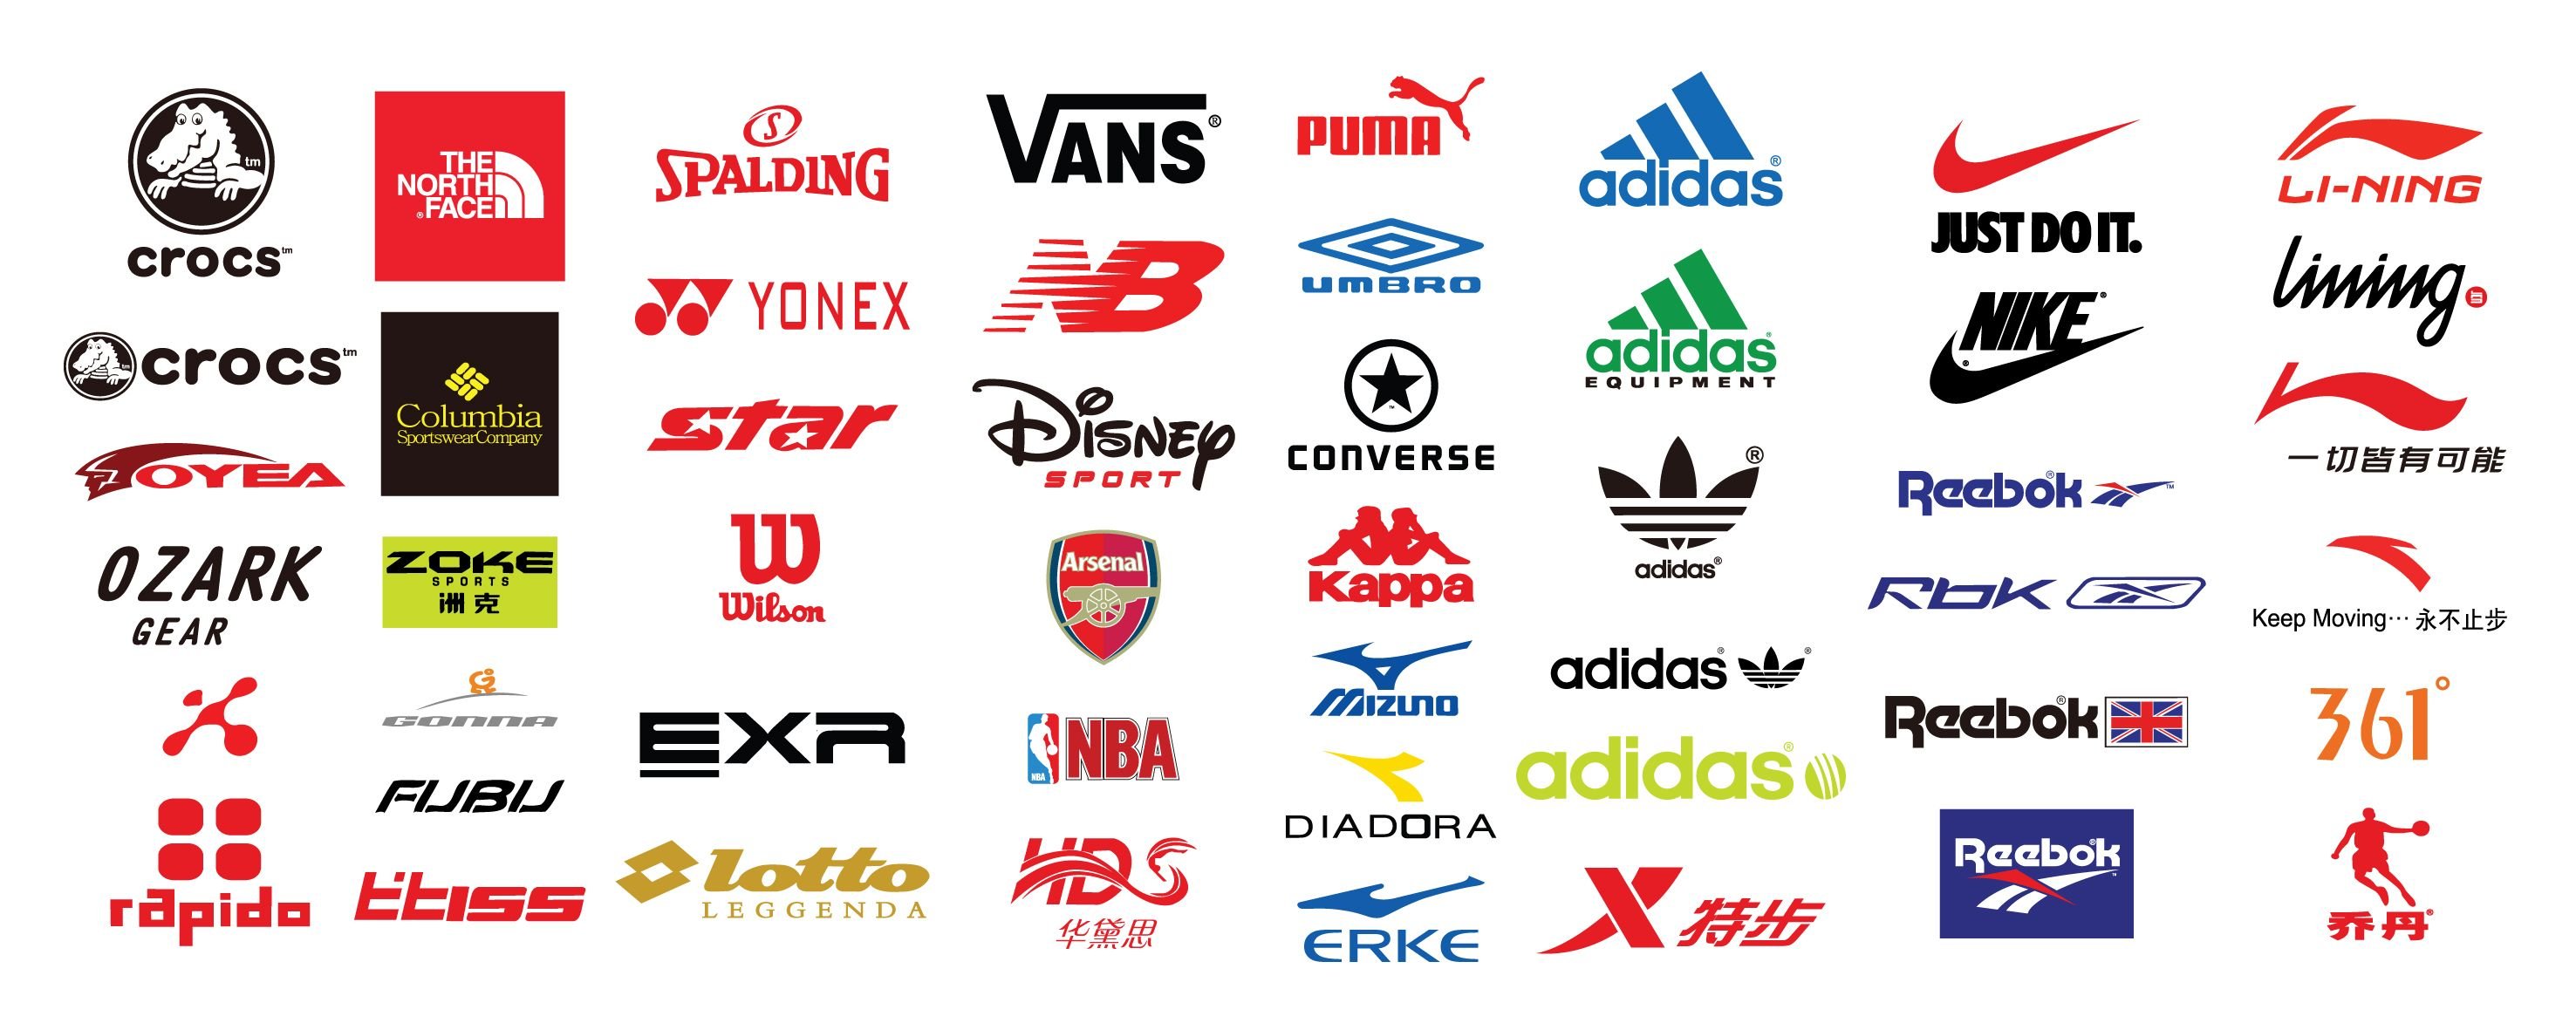 бренды кроссовок список с логотипами